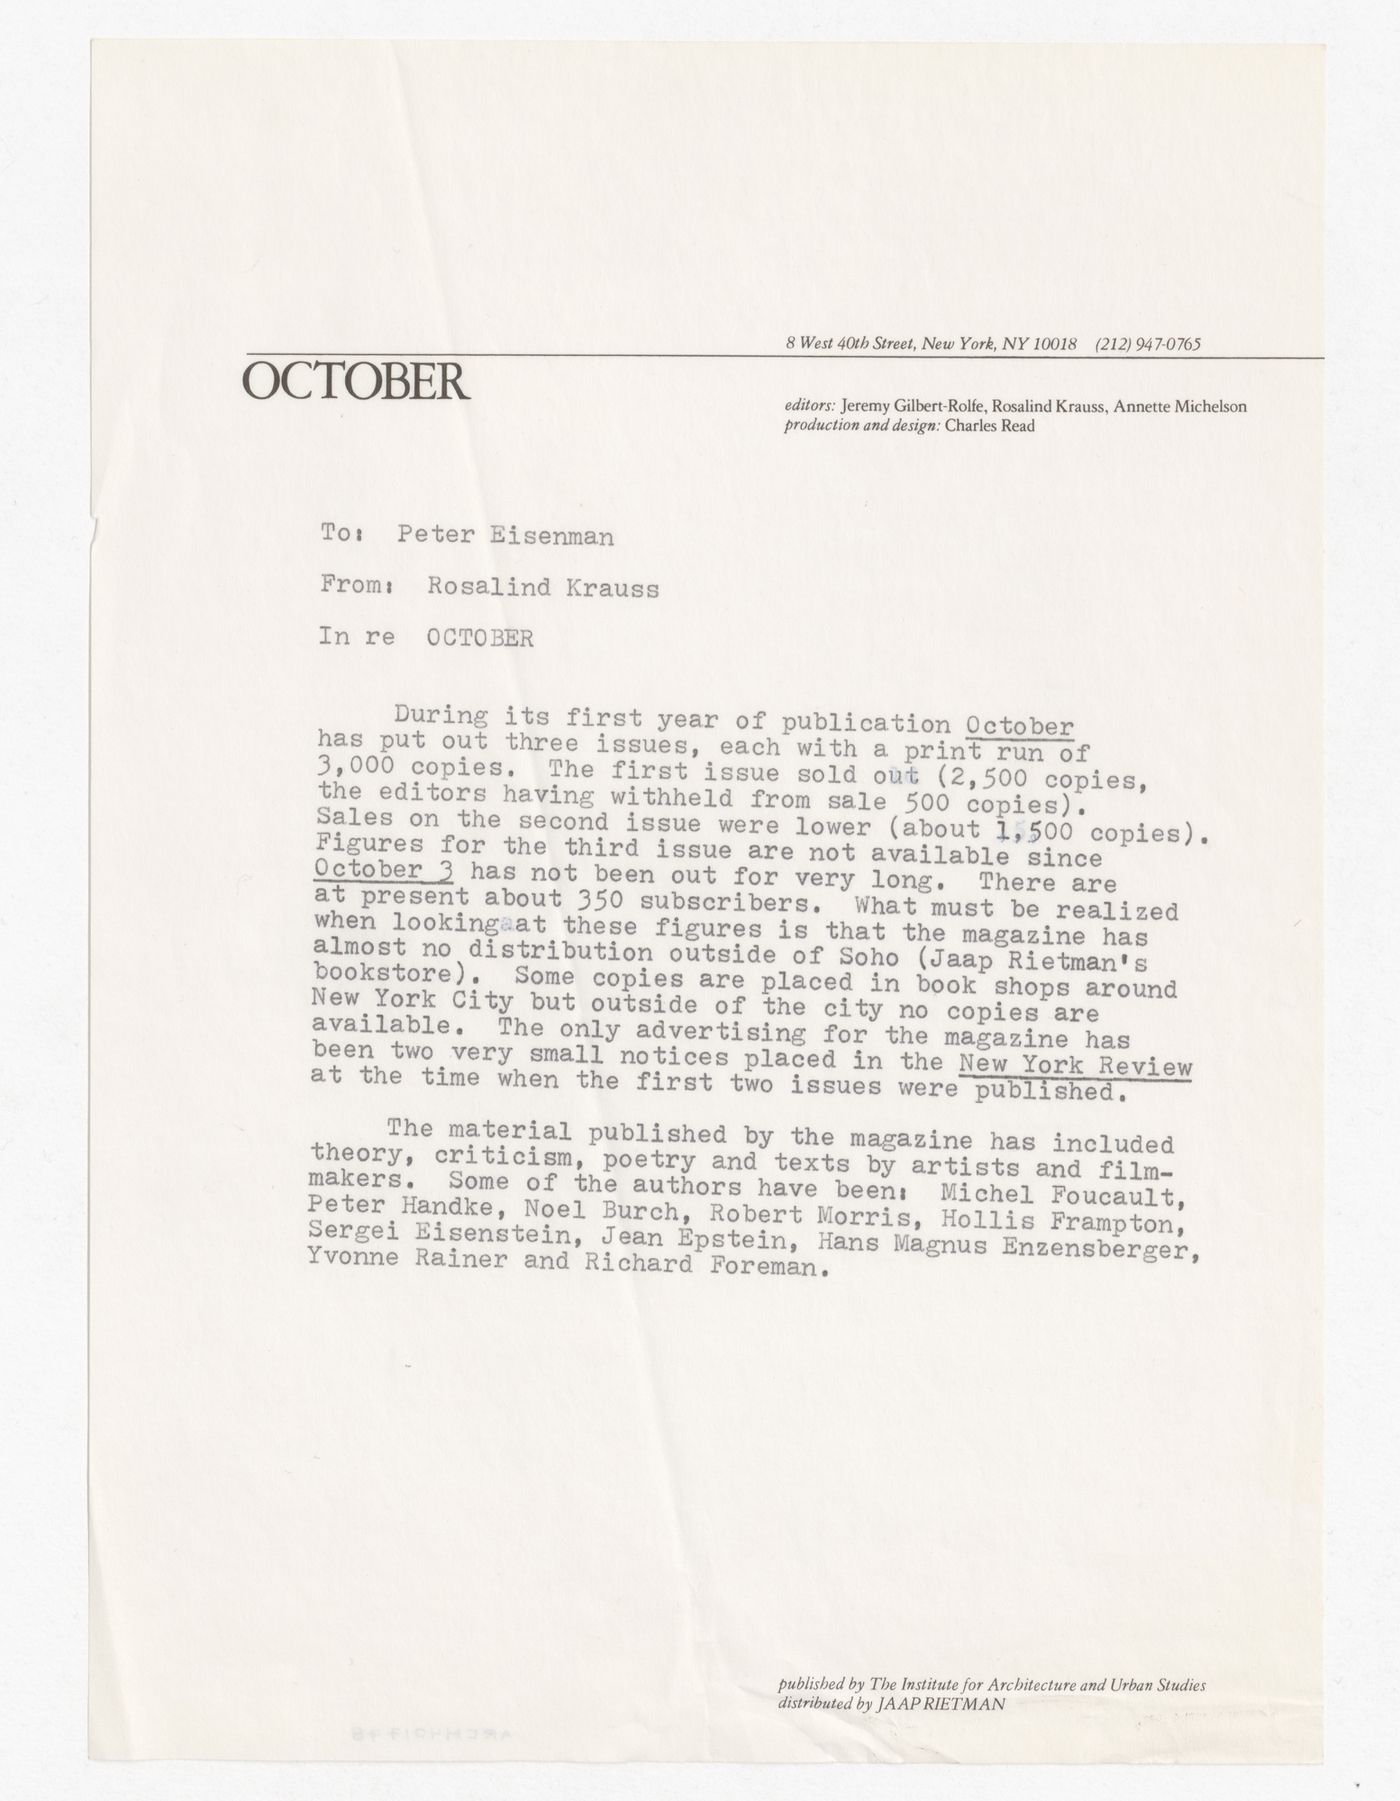 Memorandum from Rosalind Krauss to Peter D. Eisenman about first year of October